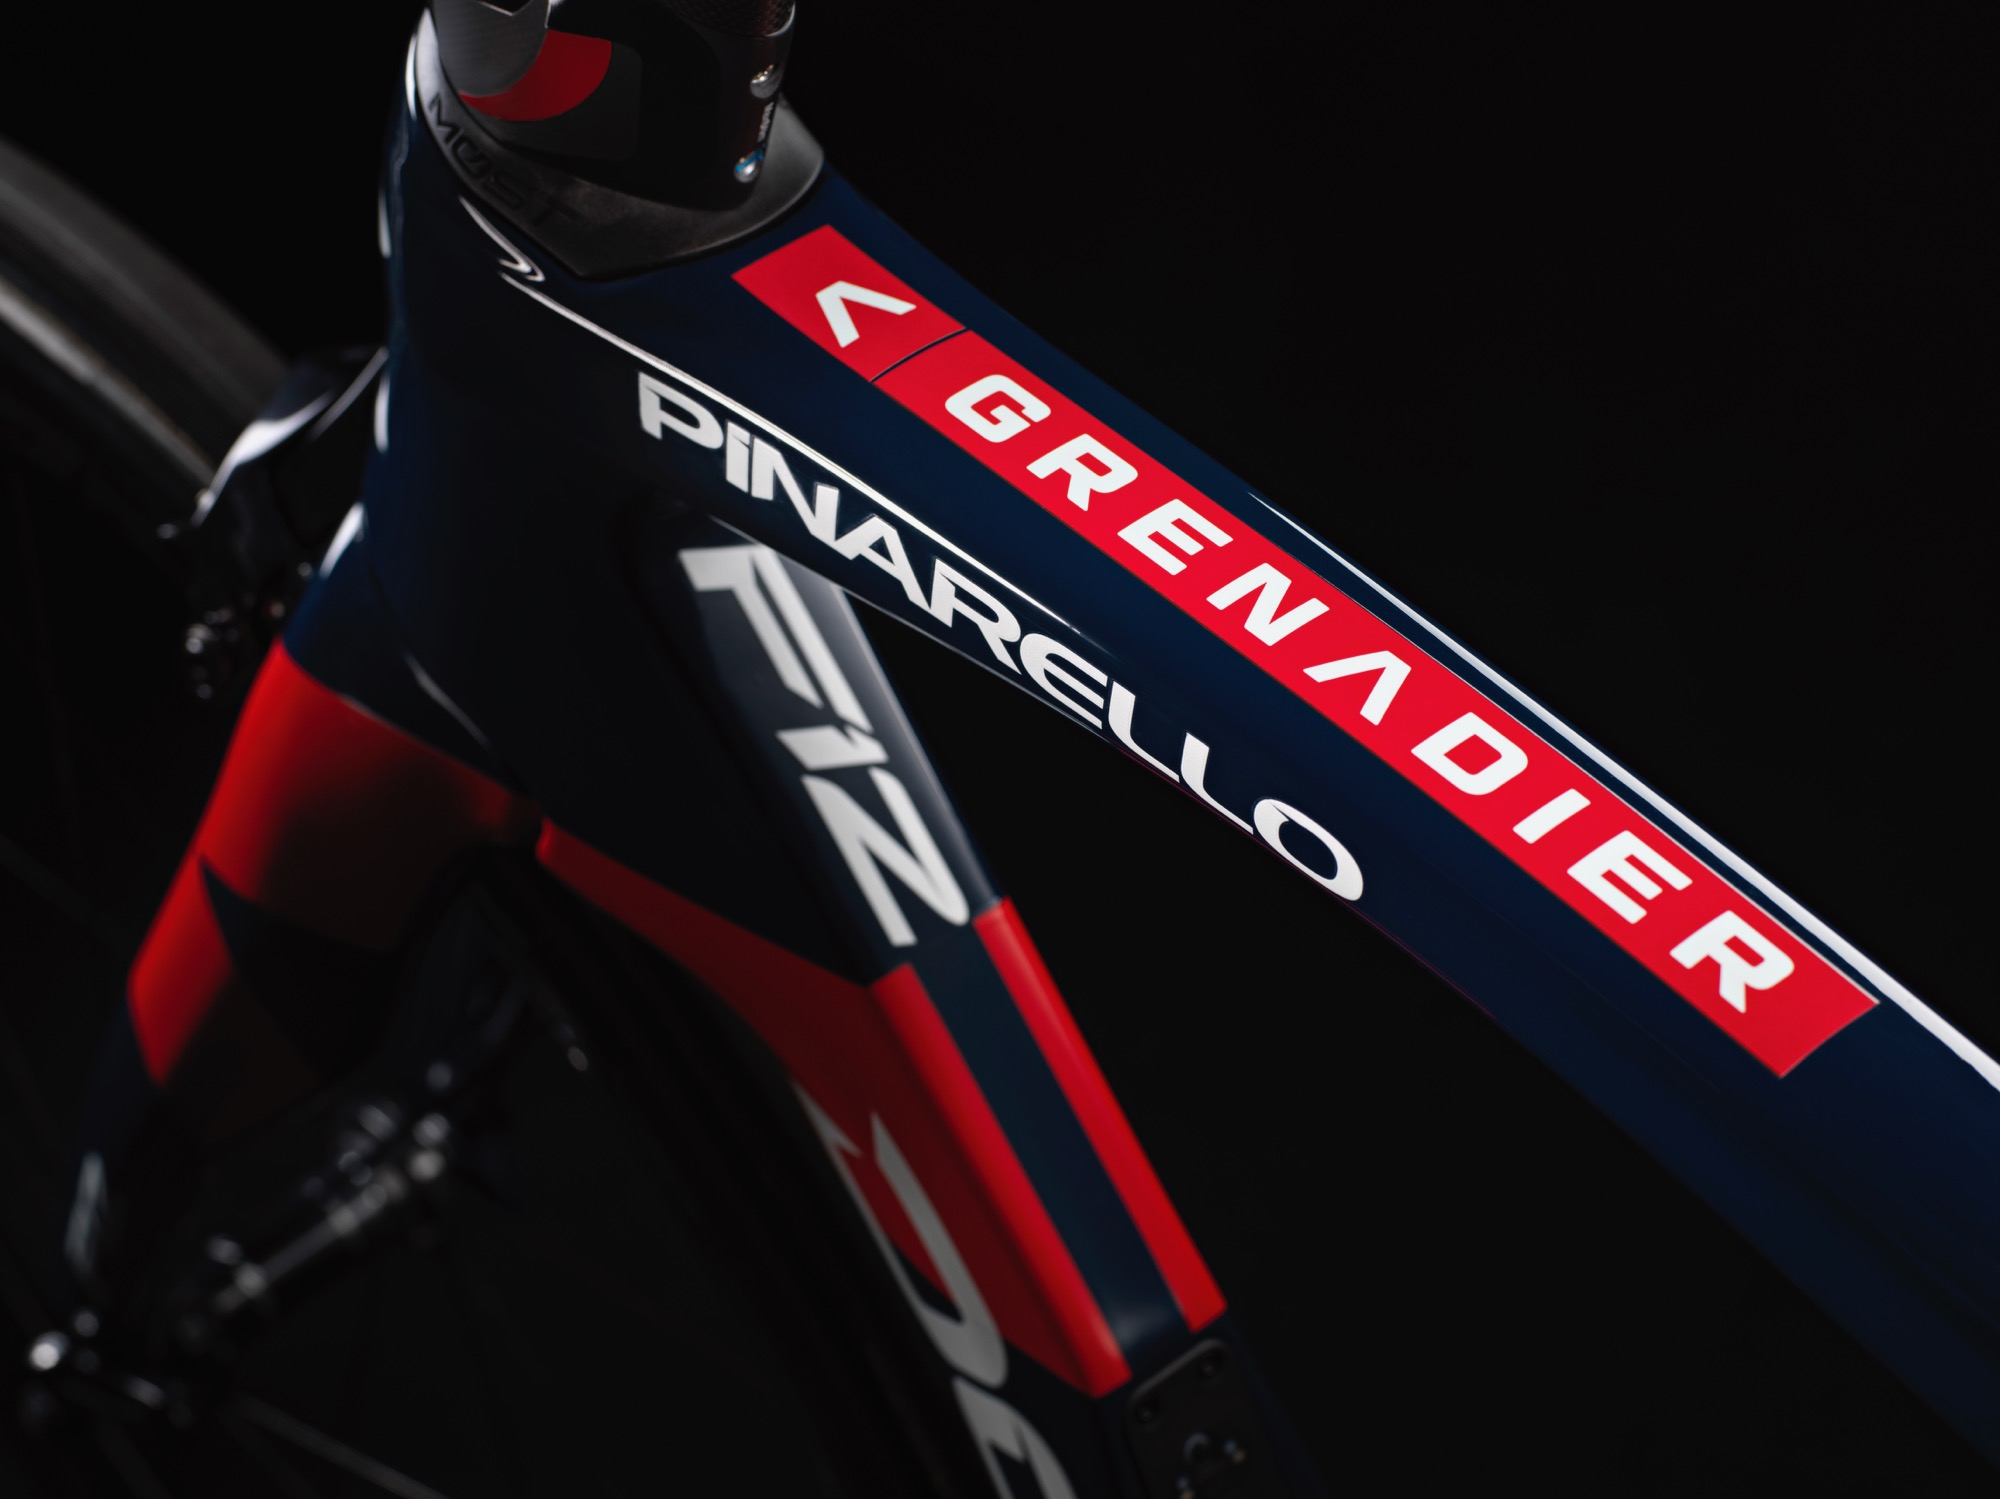 Tour de France Tech 2020: Ineos Grenadiers' Pinarello Dogma F12